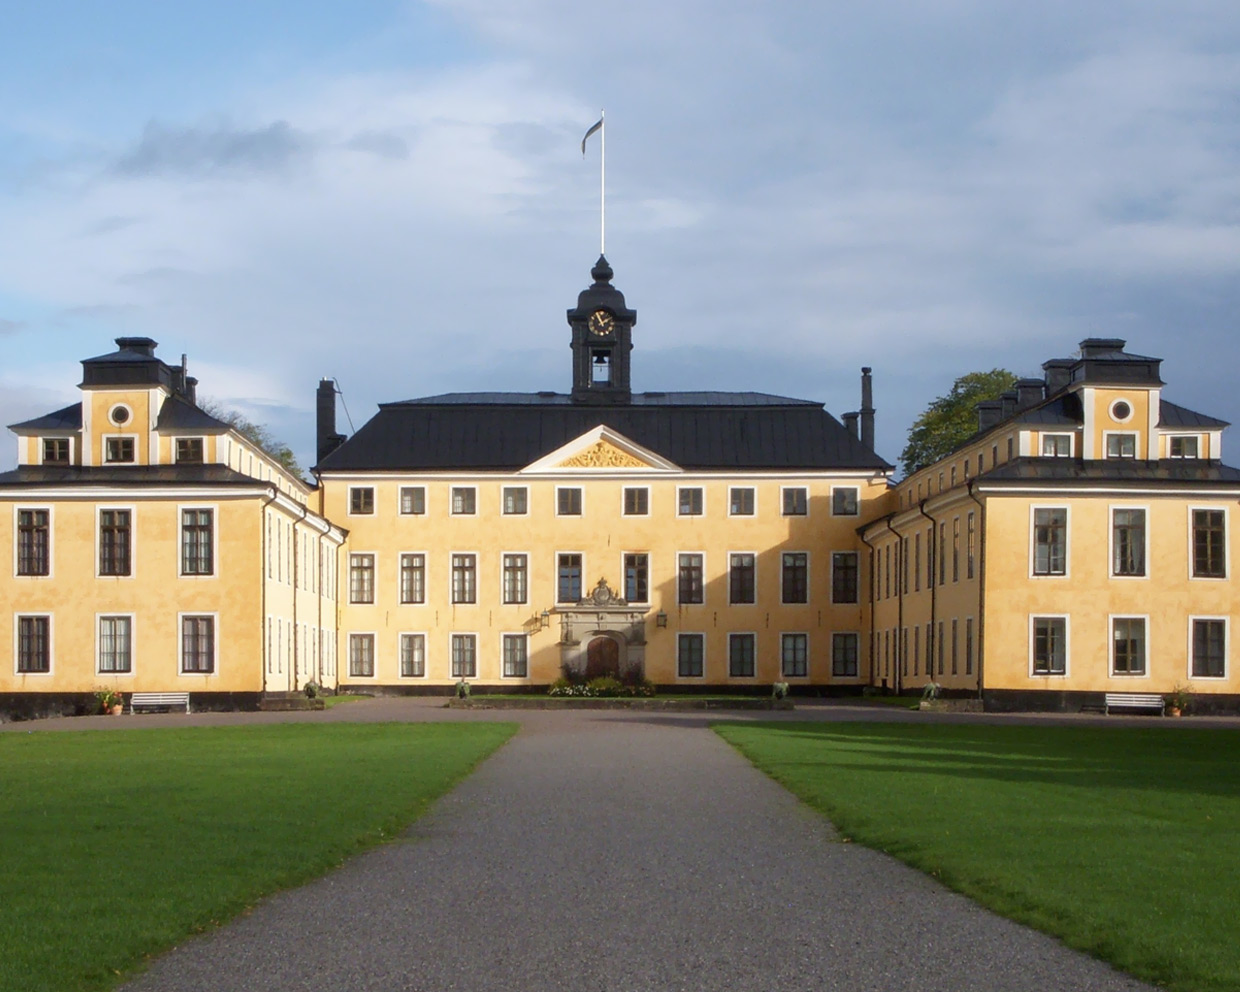 Royal Court of Sweden